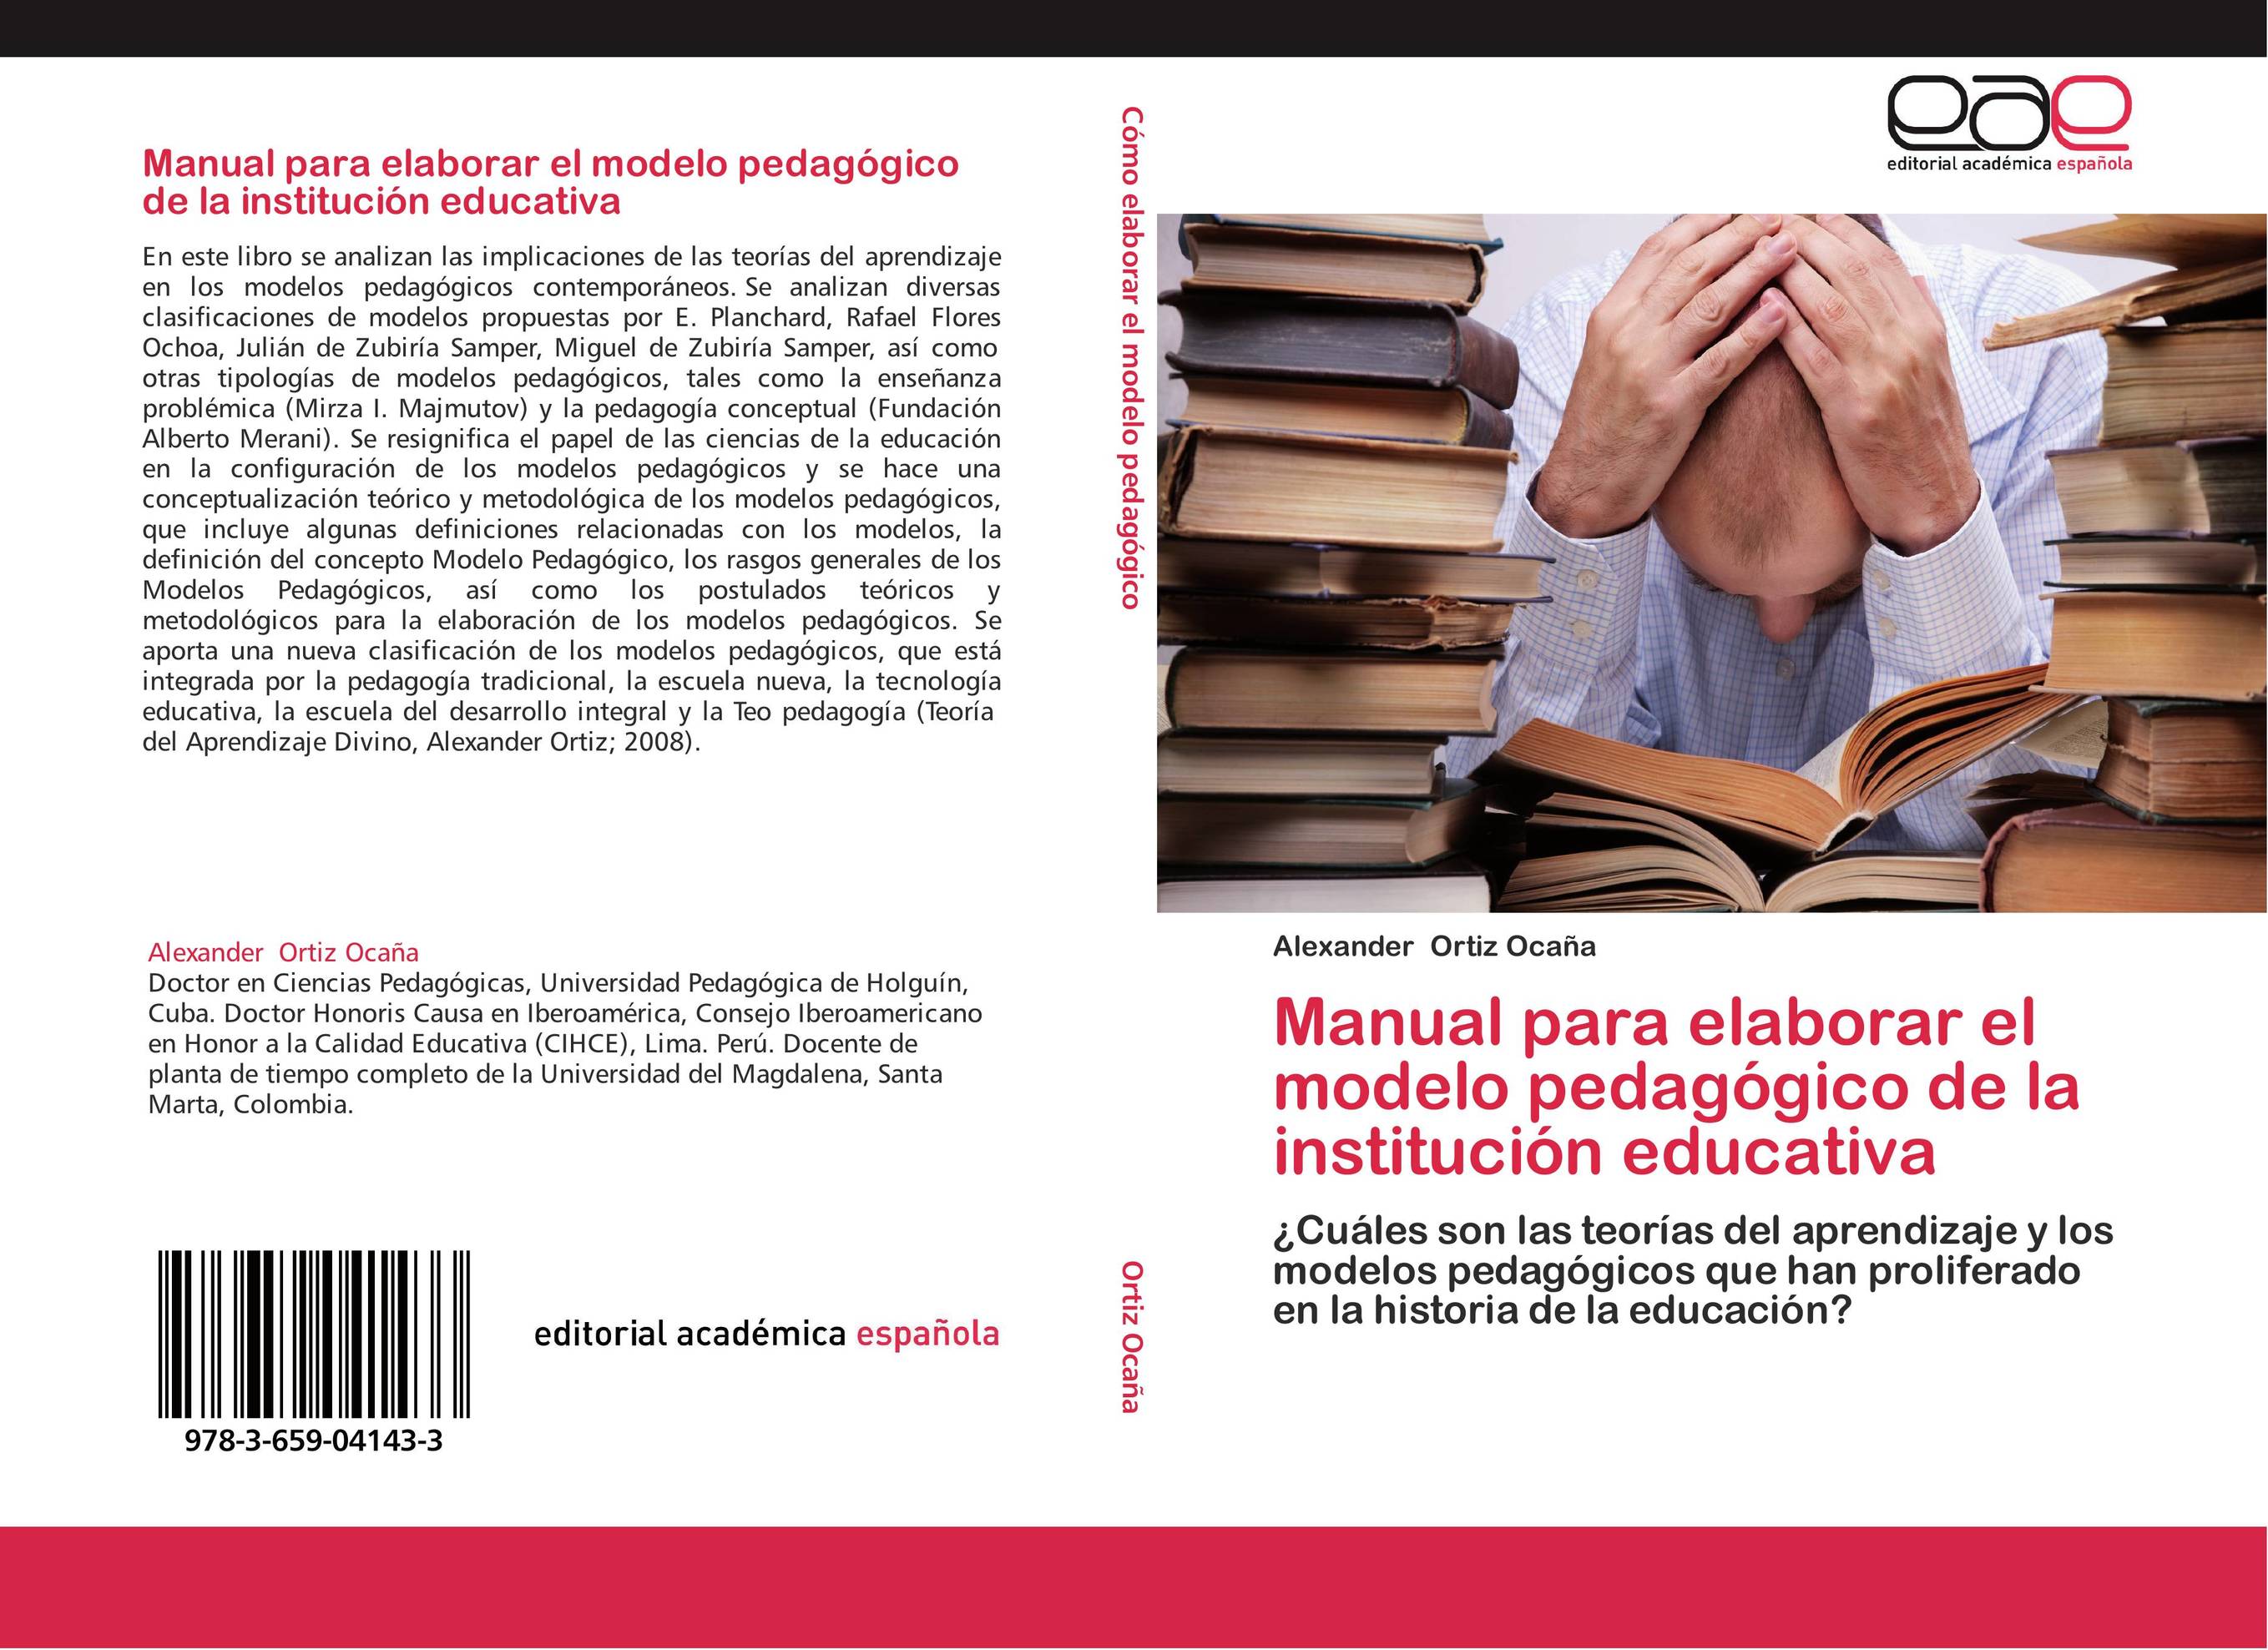 Manual para elaborar el modelo pedagógico de la institución educativa